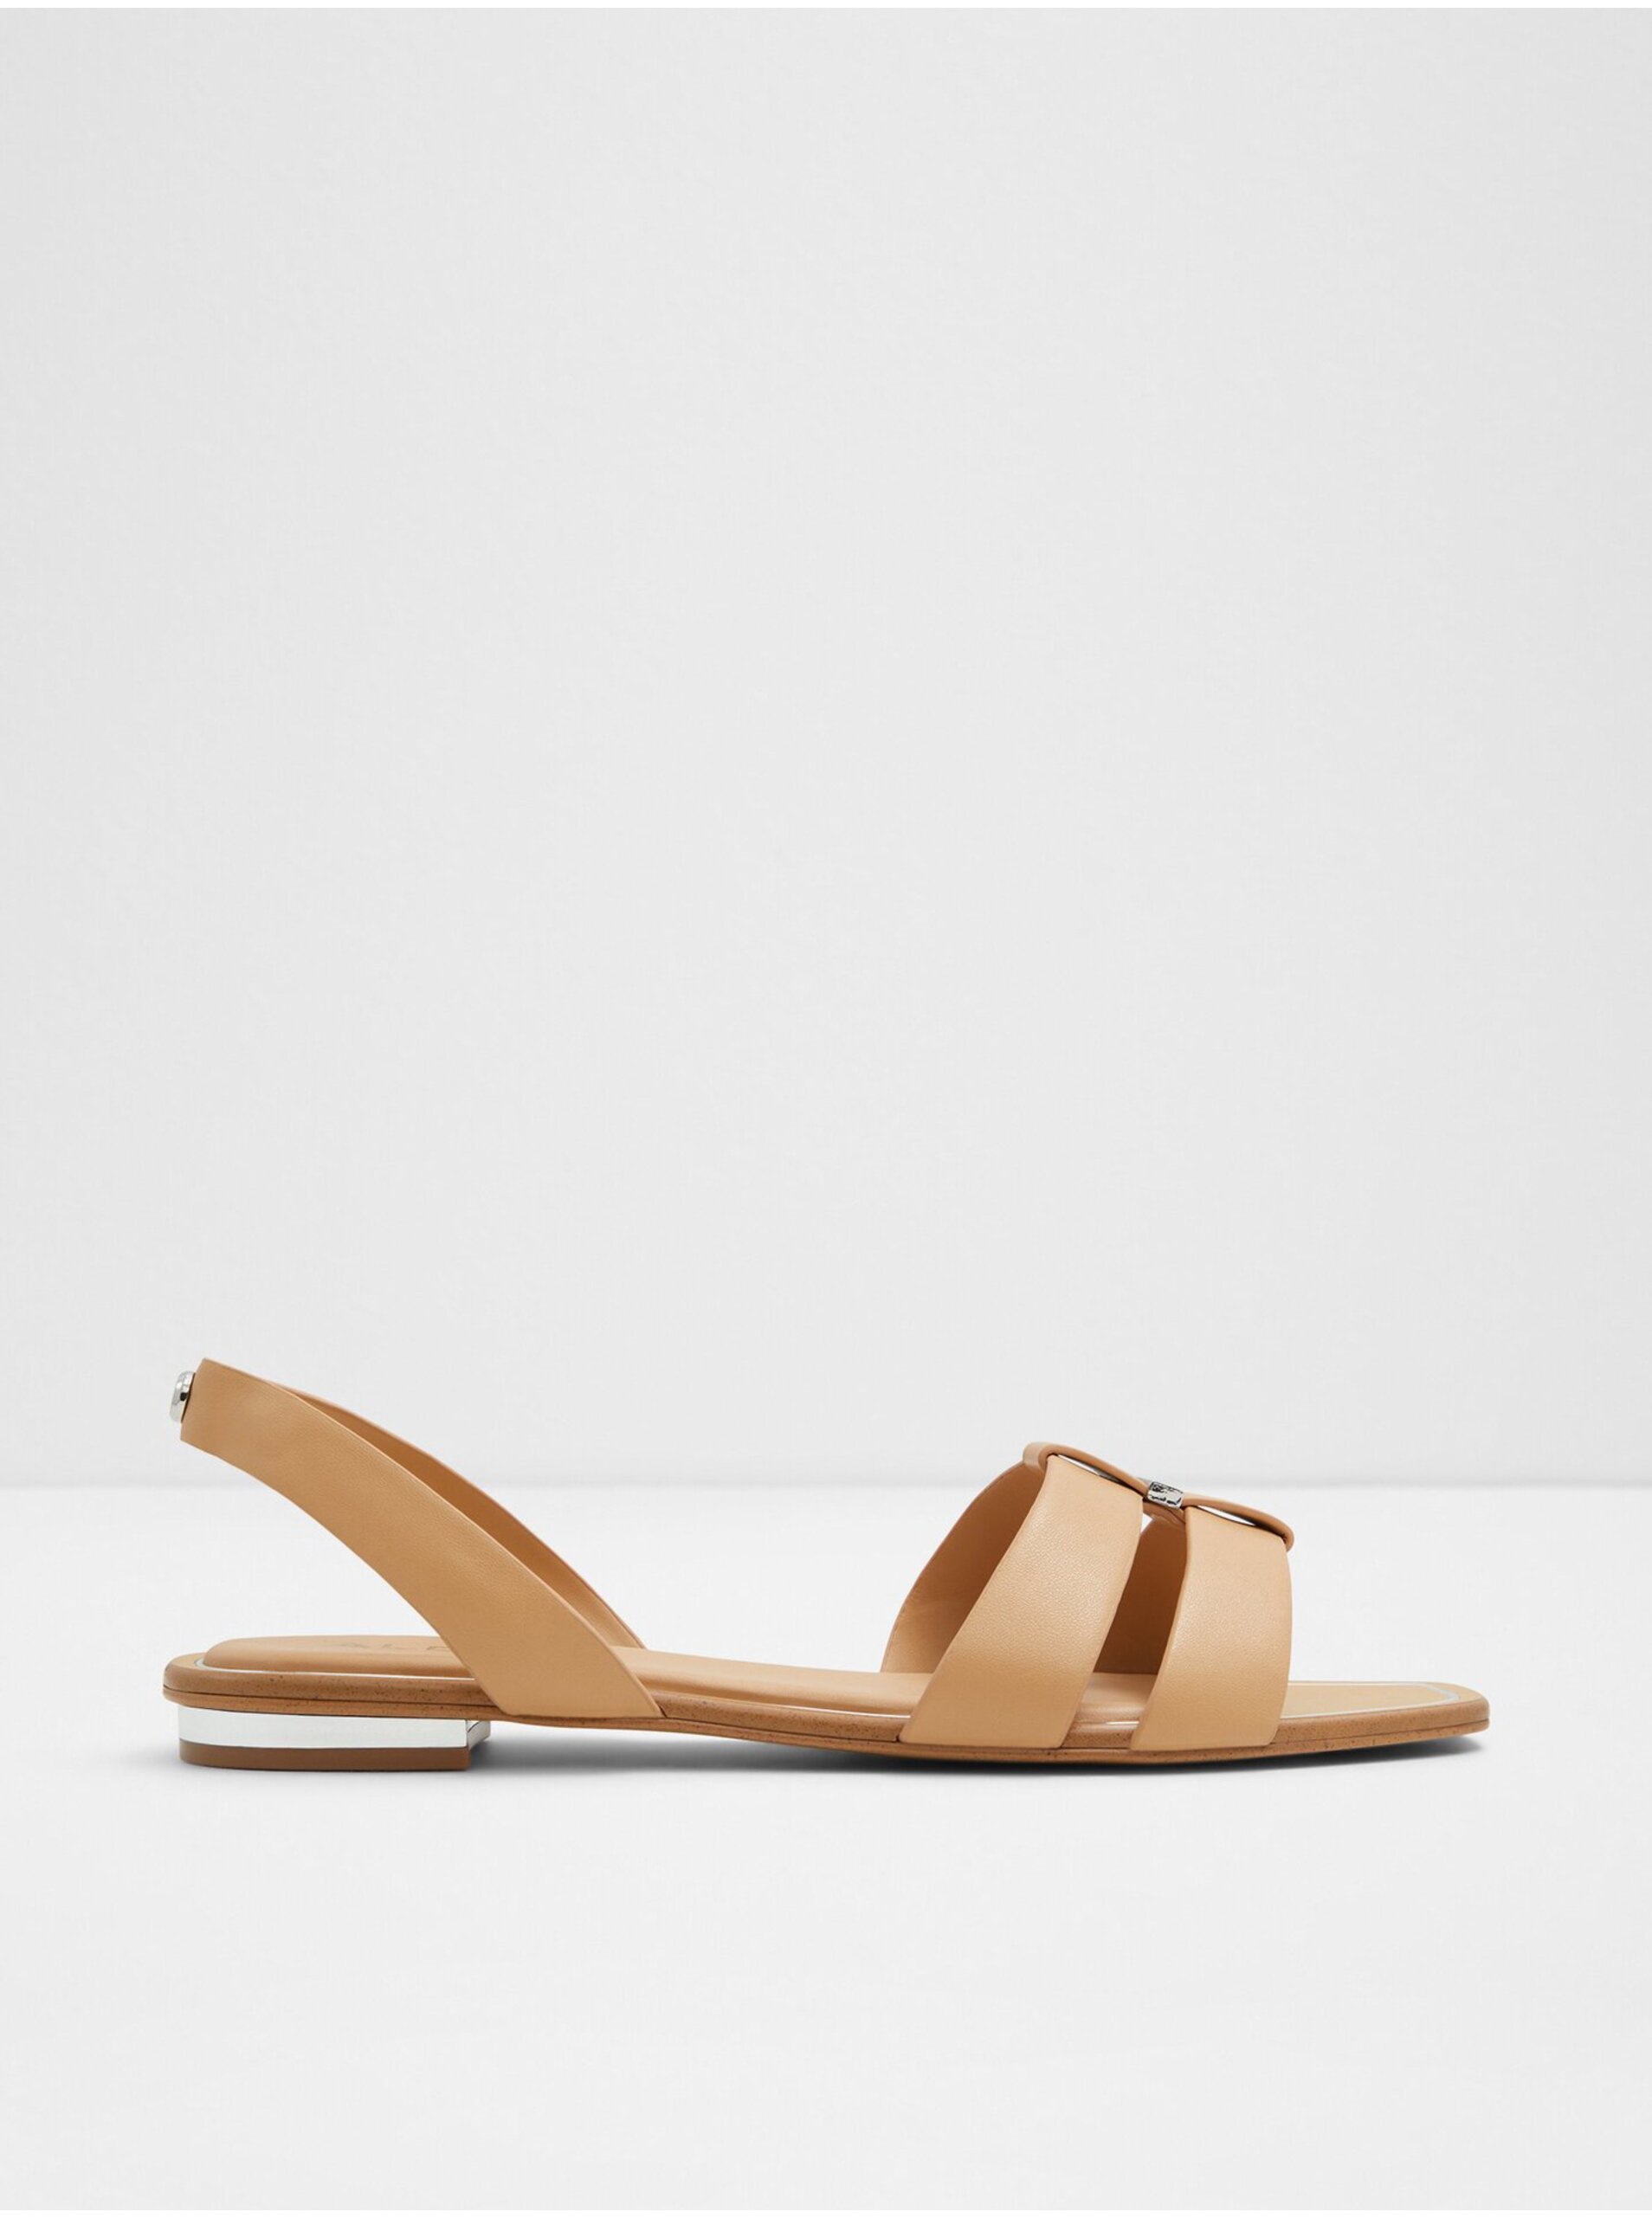 E-shop Béžové dámské sandály ALDO Balera